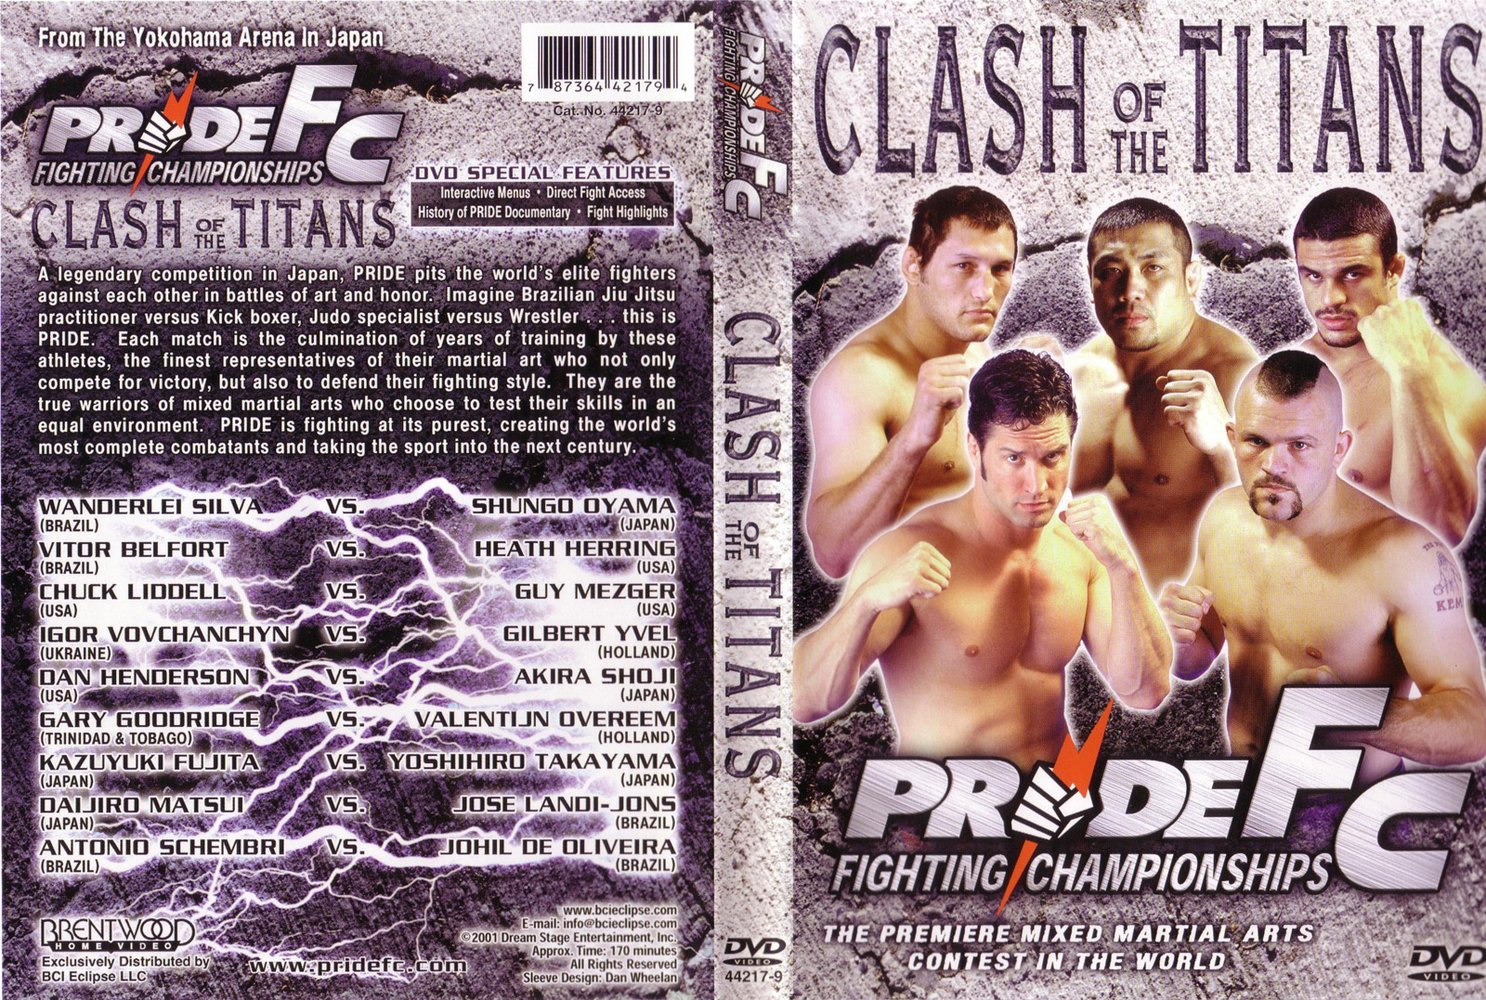 Jaquette DVD Pride Fc clash of the titans